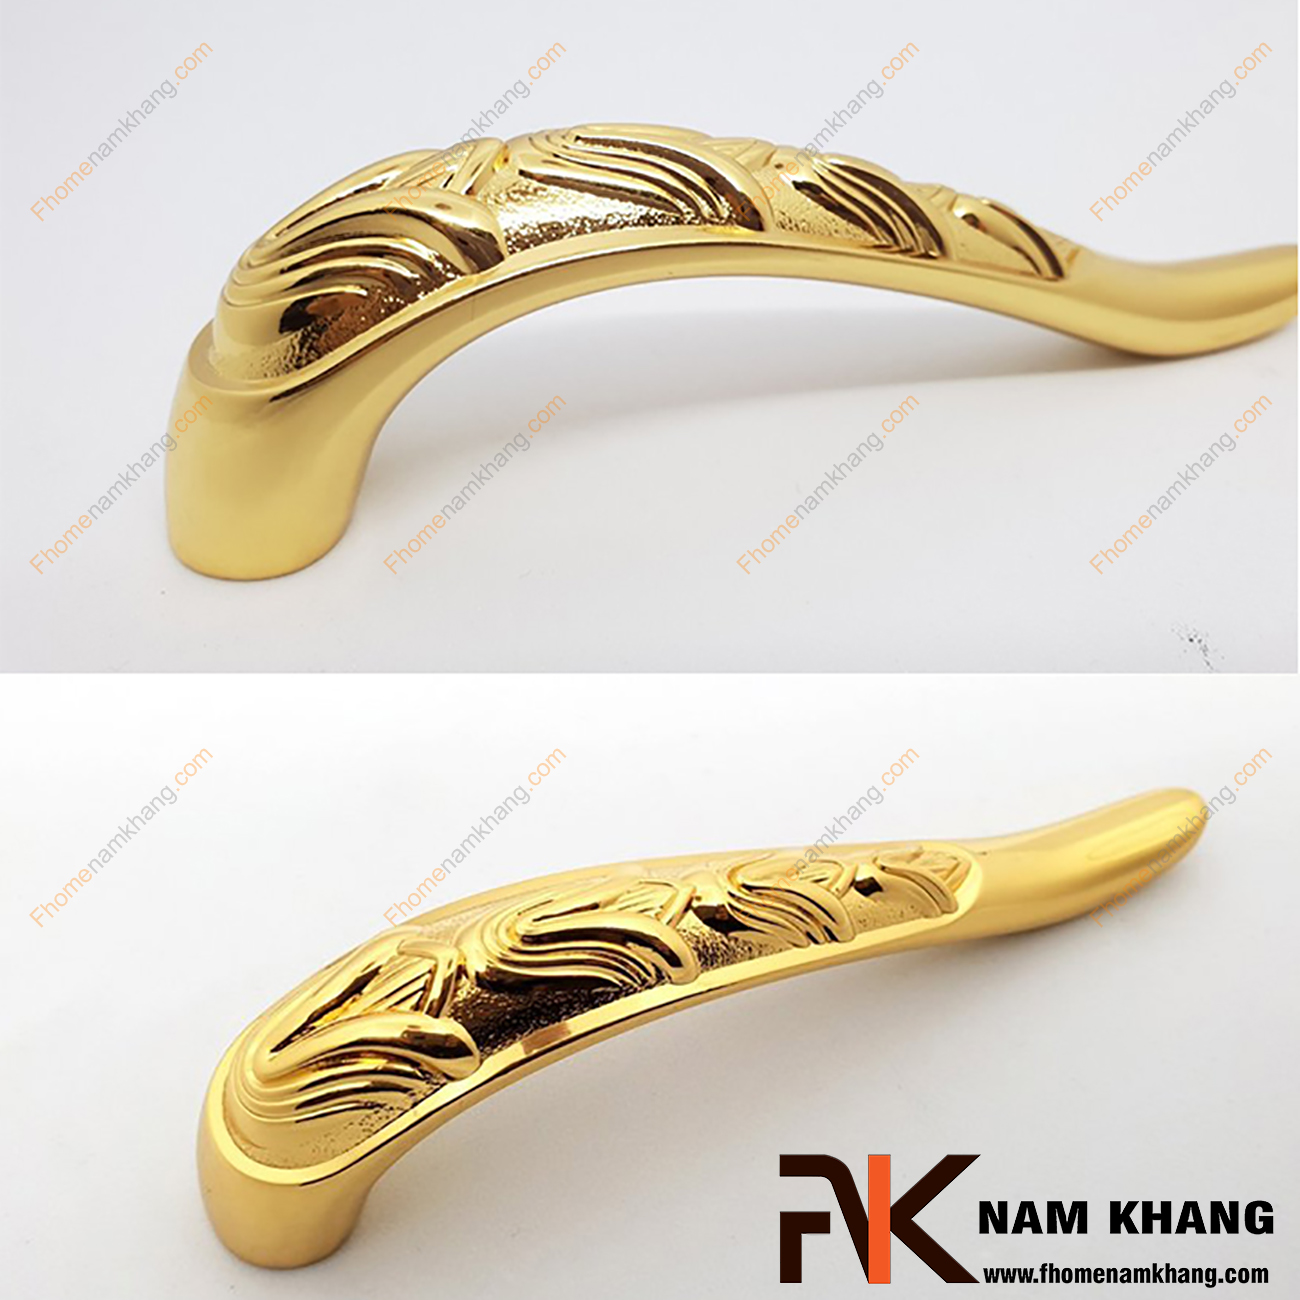 Tay nắm tủ nội thất mạ vàng NK080-V được chế tạo từ chất liệu hợp kim cao cấp được mạ một lớp vàng bóng ánh kim mang lại độ bền rất cao, khả năng chịu lực lớn, chống phai màu và giữ được độ sáng bóng của sản phẩm.